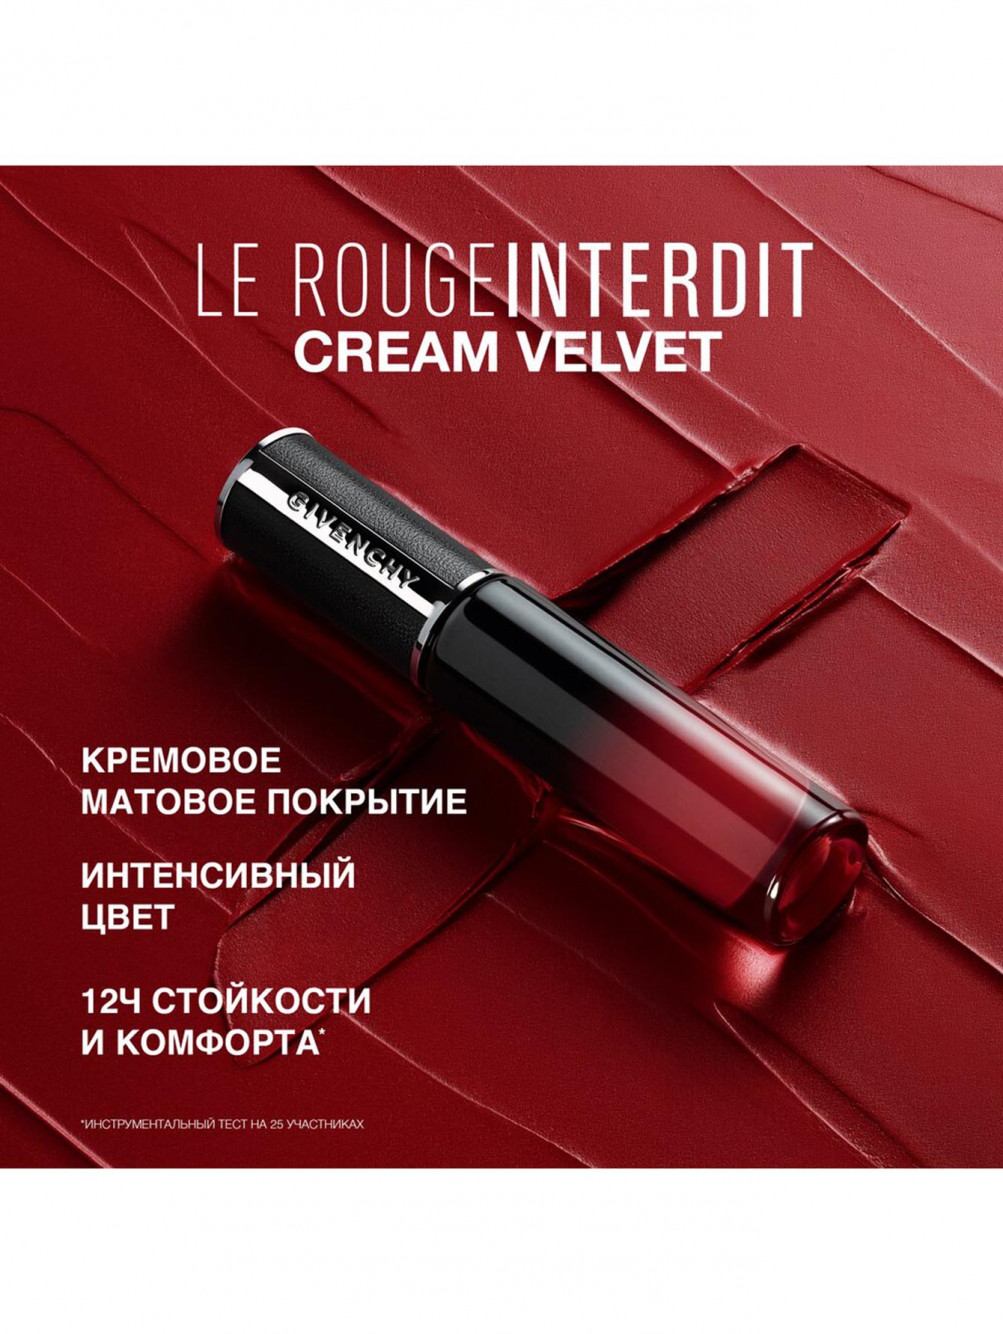 Жидкая матовая помада для губ Le Rouge Interdit Cream Velvet, оттенок 36, 6,5 мл - Обтравка4